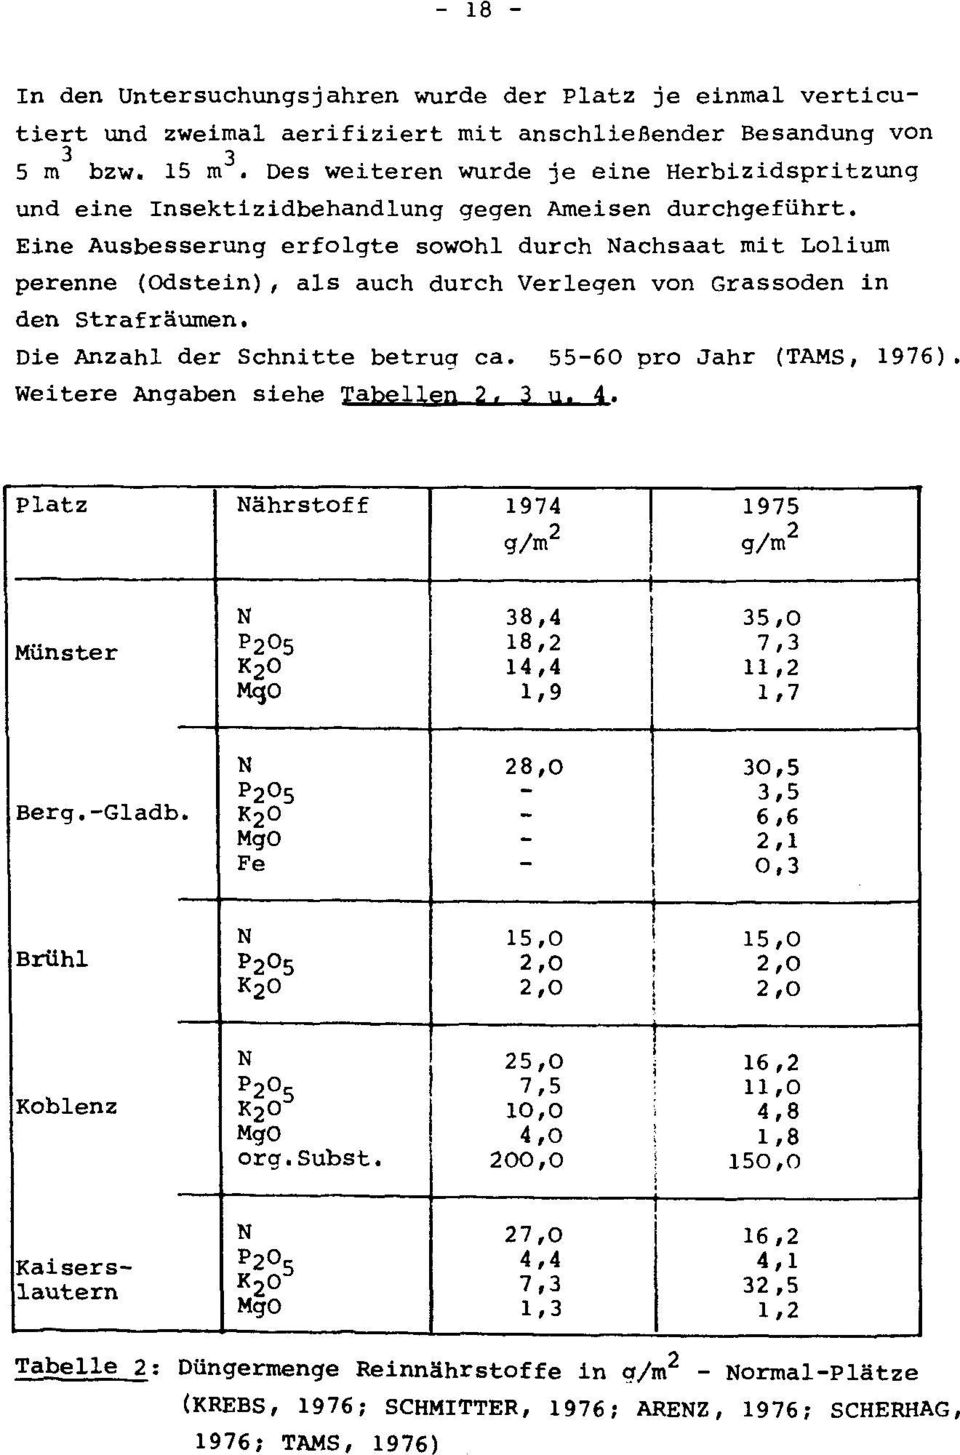 Eine Ausbesserung erfolgte sowohl durch Nachsaat mit Lolium perenne (Odstein), als auch durch Verlegen von Grassoden in den Strafraumen. Die Anzahl der Schnitte betrug ca. 55-60 pro Jahr (TAMS, 1976).